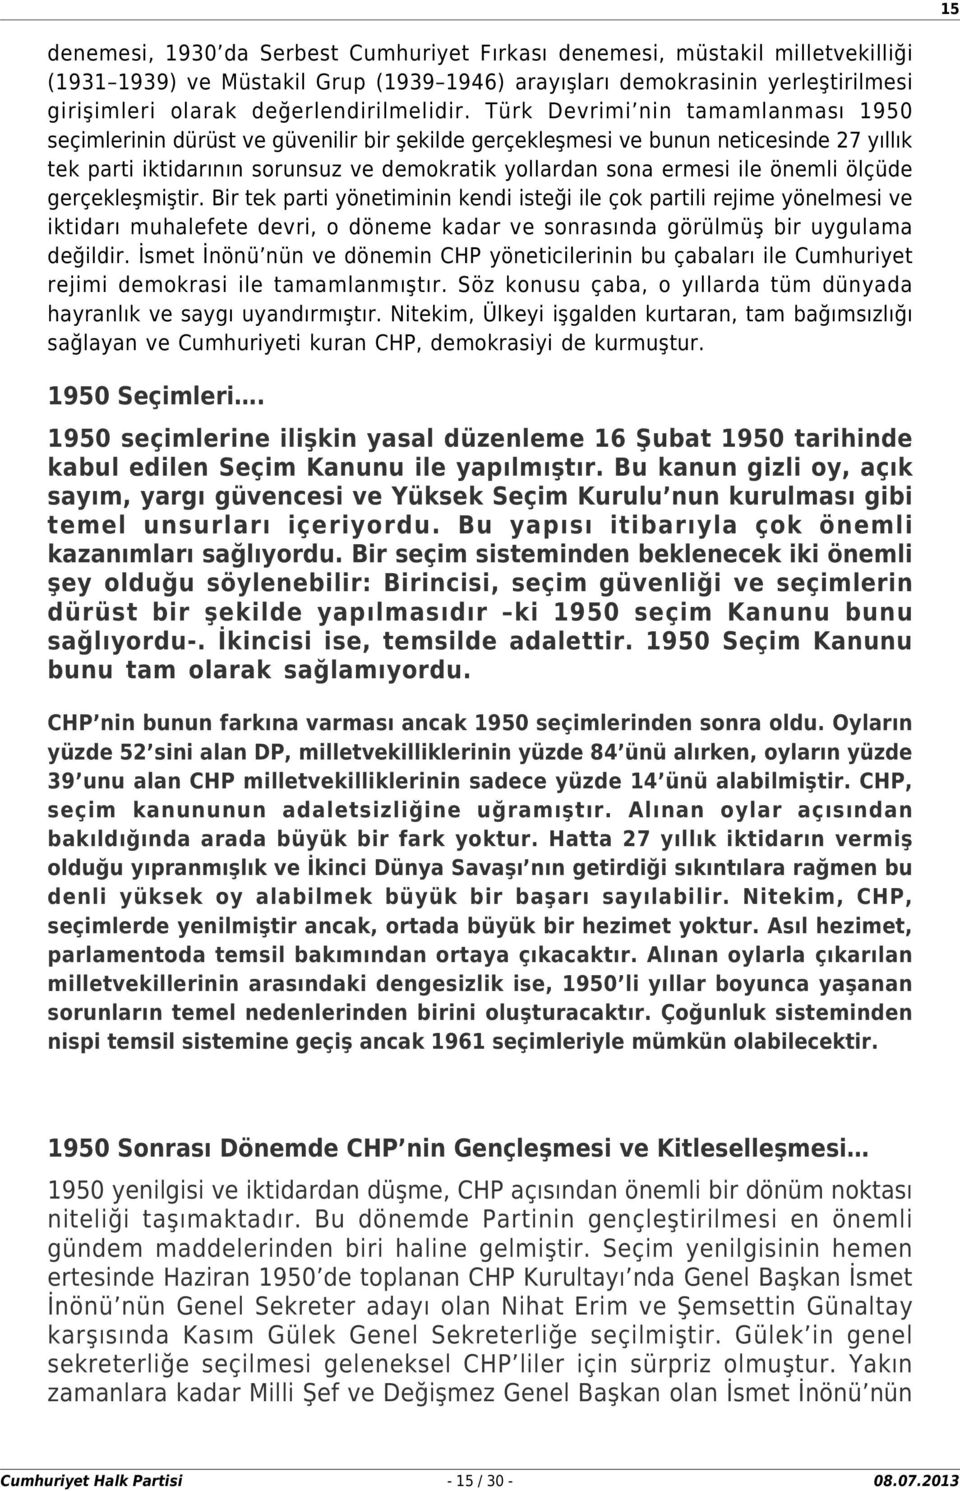 Türk Devrimi nin tamamlanması 1950 seçimlerinin dürüst ve güvenilir bir şekilde gerçekleşmesi ve bunun neticesinde 27 yıllık tek parti iktidarının sorunsuz ve demokratik yollardan sona ermesi ile